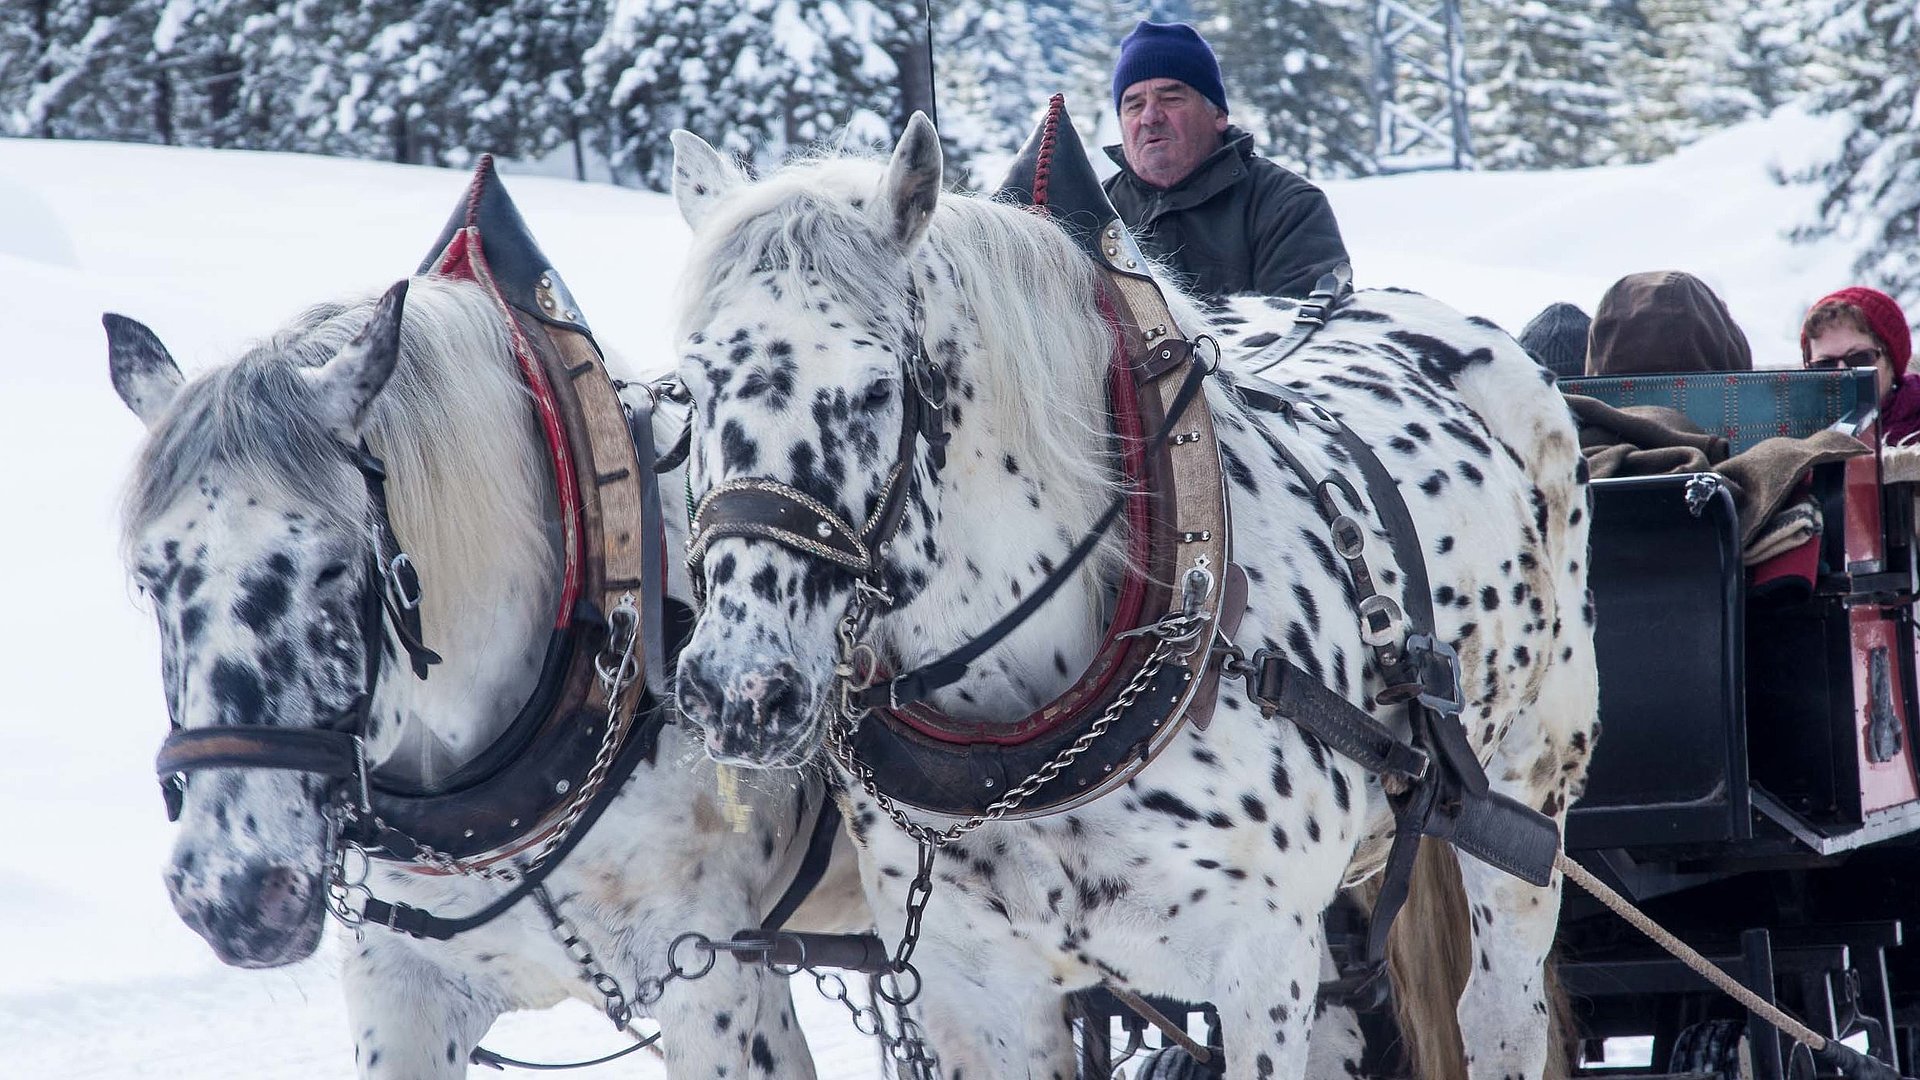 Reiten und Reiturlaub in Unterfranken - Schneelandschaft in waldiger Umgebung; weiße Pferde, schwarz-gepunktet führen Kutsche an